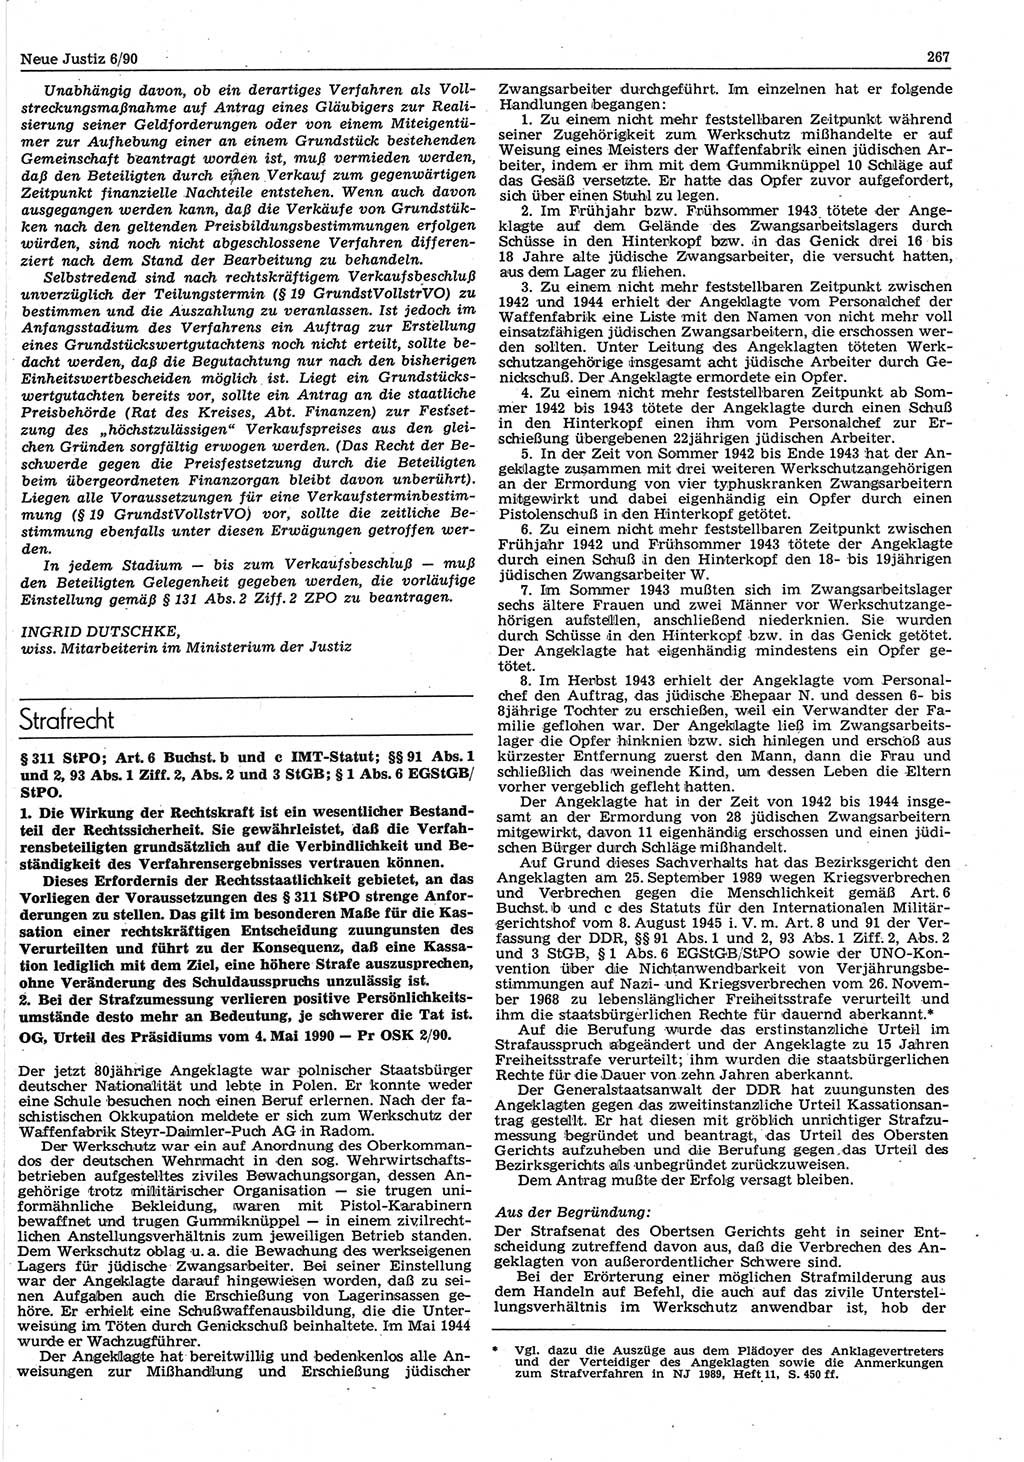 Neue Justiz (NJ), Zeitschrift für Rechtsetzung und Rechtsanwendung [Deutsche Demokratische Republik (DDR)], 44. Jahrgang 1990, Seite 267 (NJ DDR 1990, S. 267)